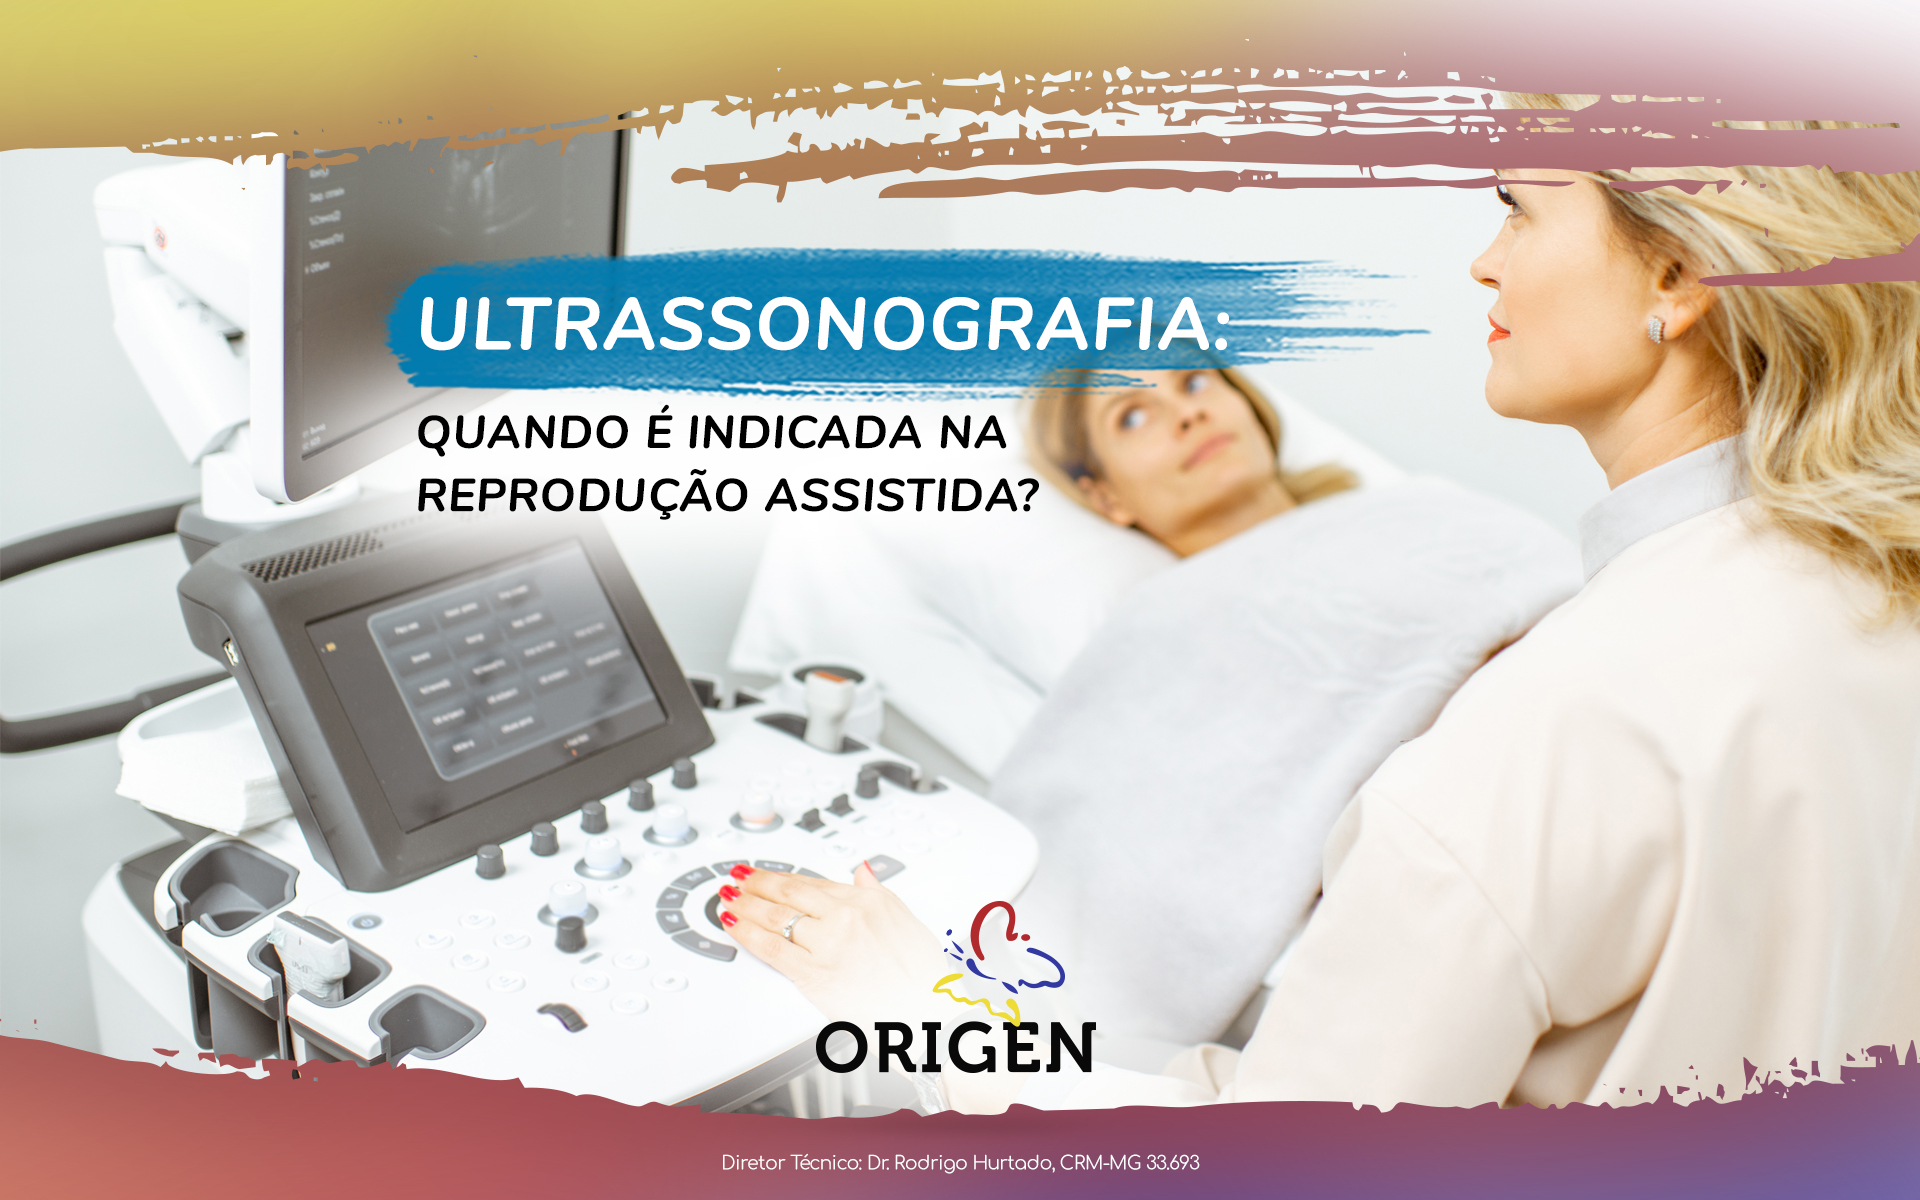 Ultrassonografia: quando é indicada na reprodução assistida?